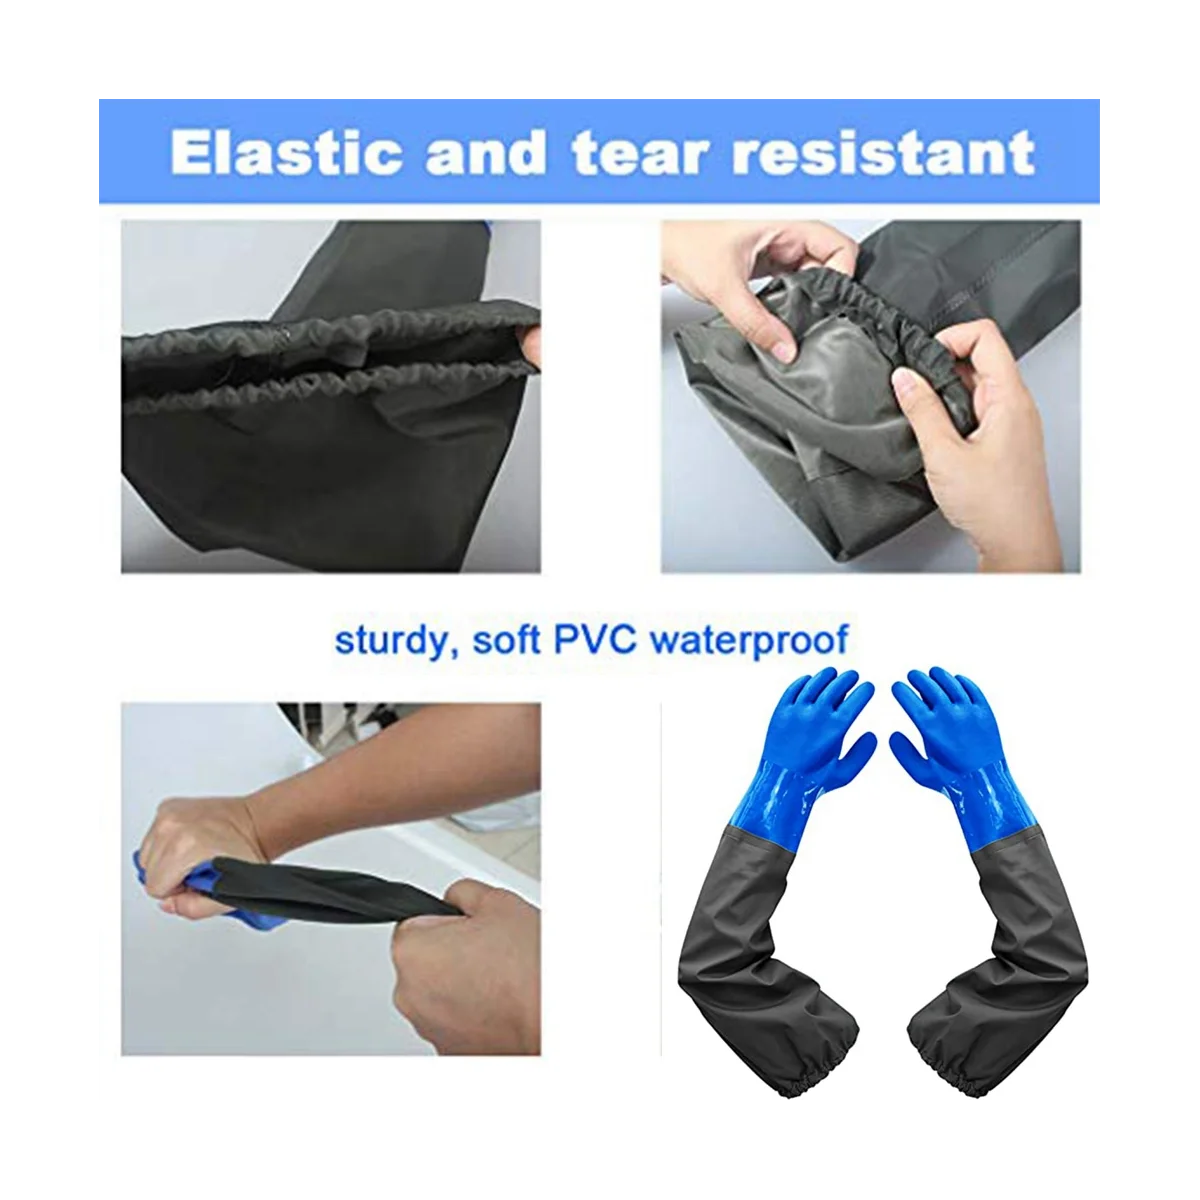 Длинные резиновые перчатки, длинные водонепроницаемые перчатки и сверхпрочные водонепроницаемые перчатки для работы с вредными веществами и кислотами Изображение 5 